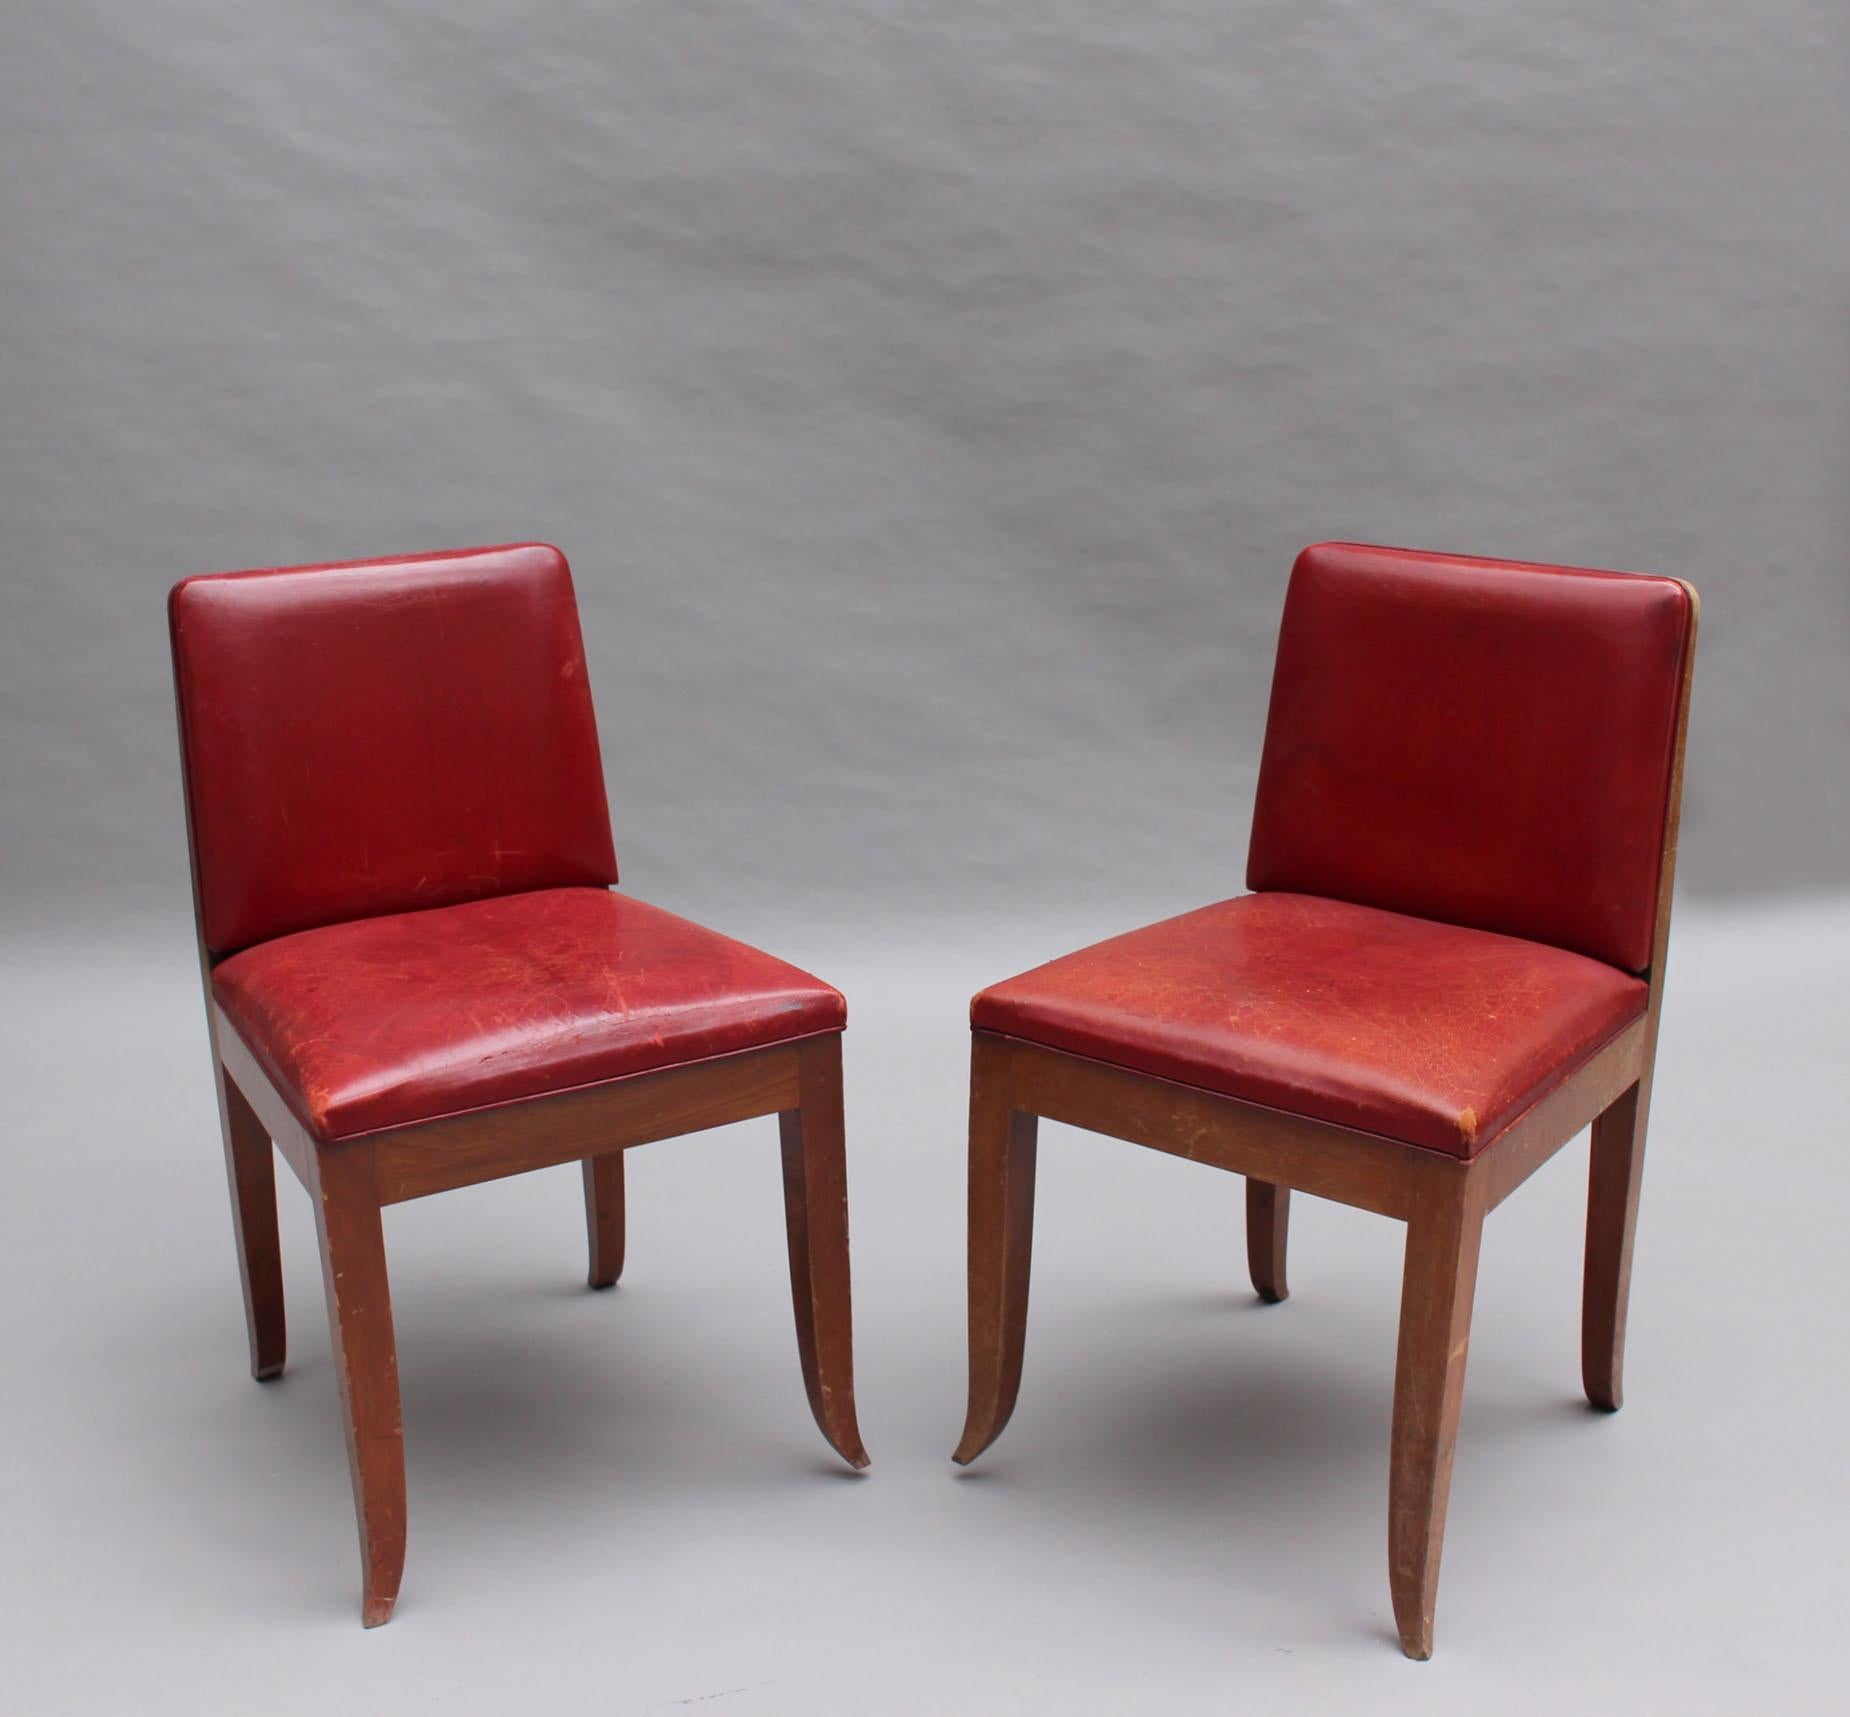 Fünf französische Beistellstühle aus Mahagoni aus den 1930er Jahren mit Originalleder.
Der Preis gilt pro Stuhl.